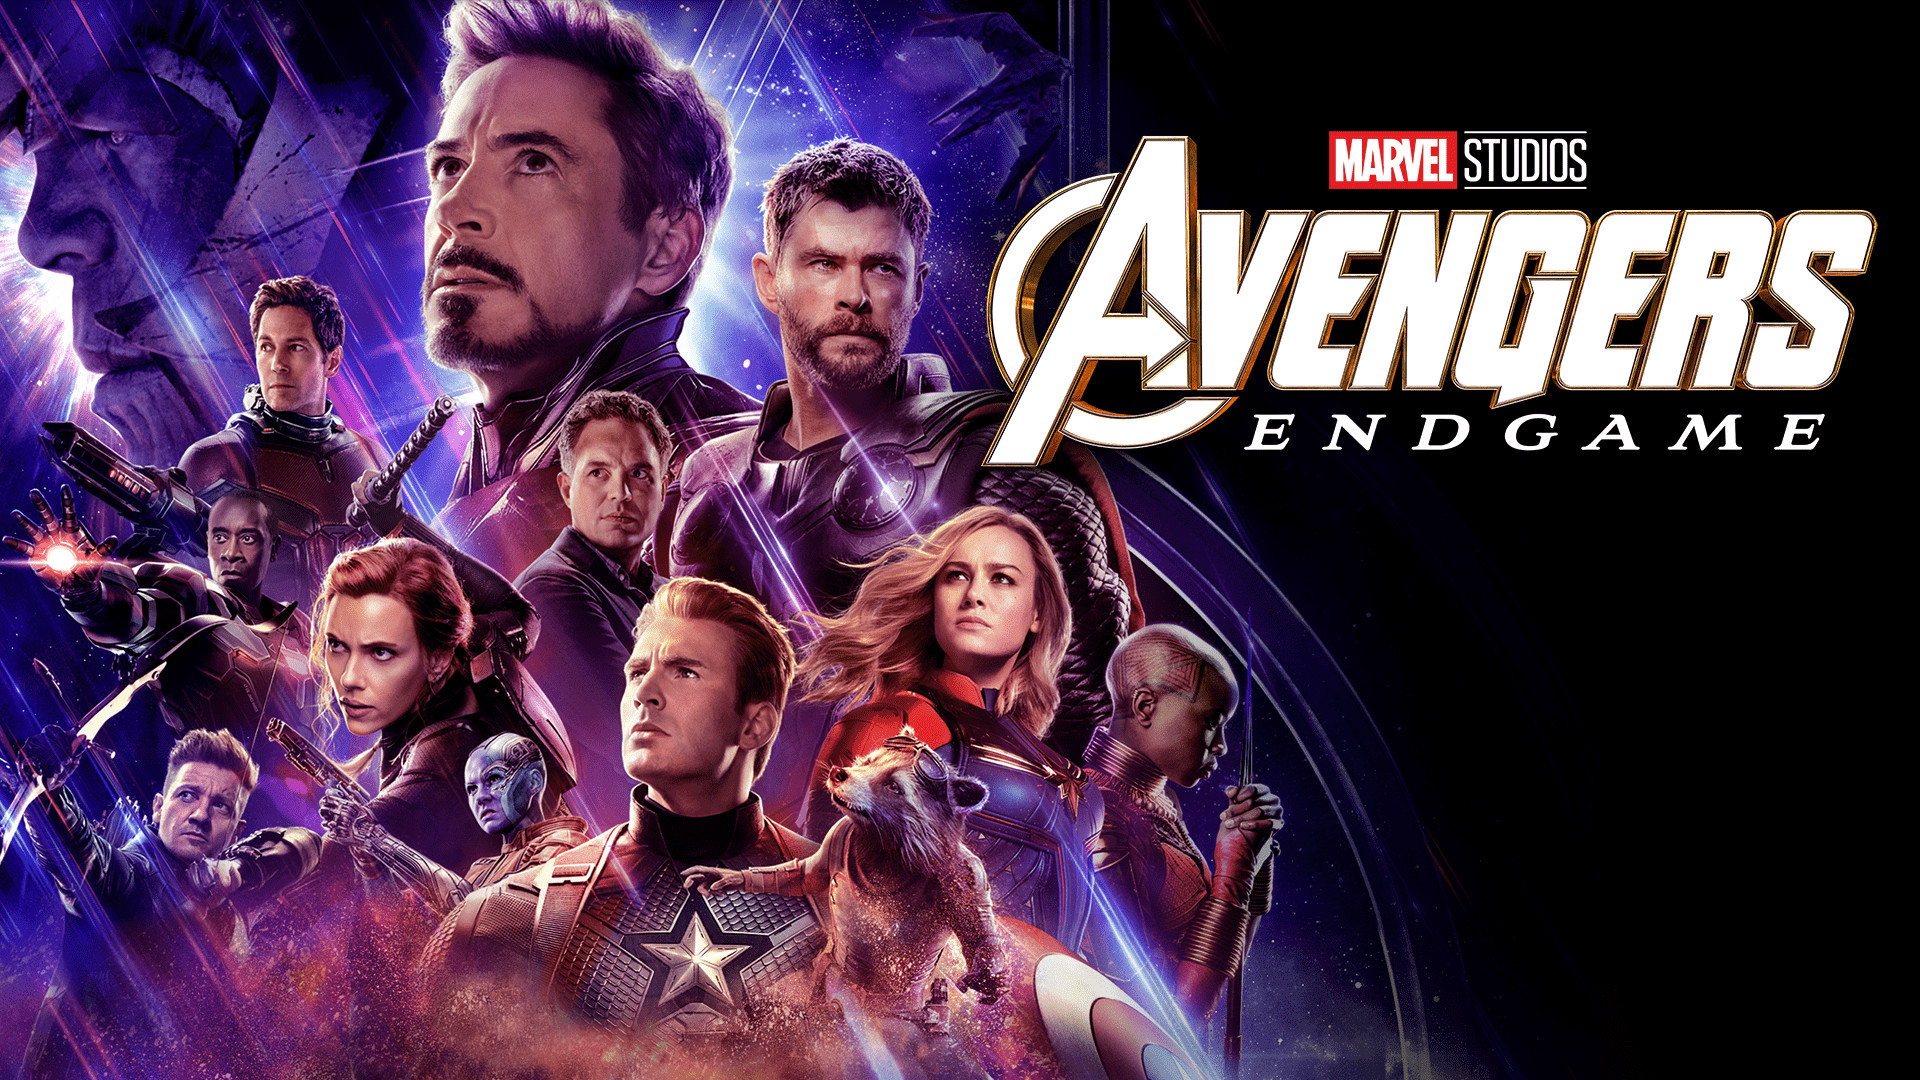 Watch Marvel Studios' Avengers: Endgame | Disney+